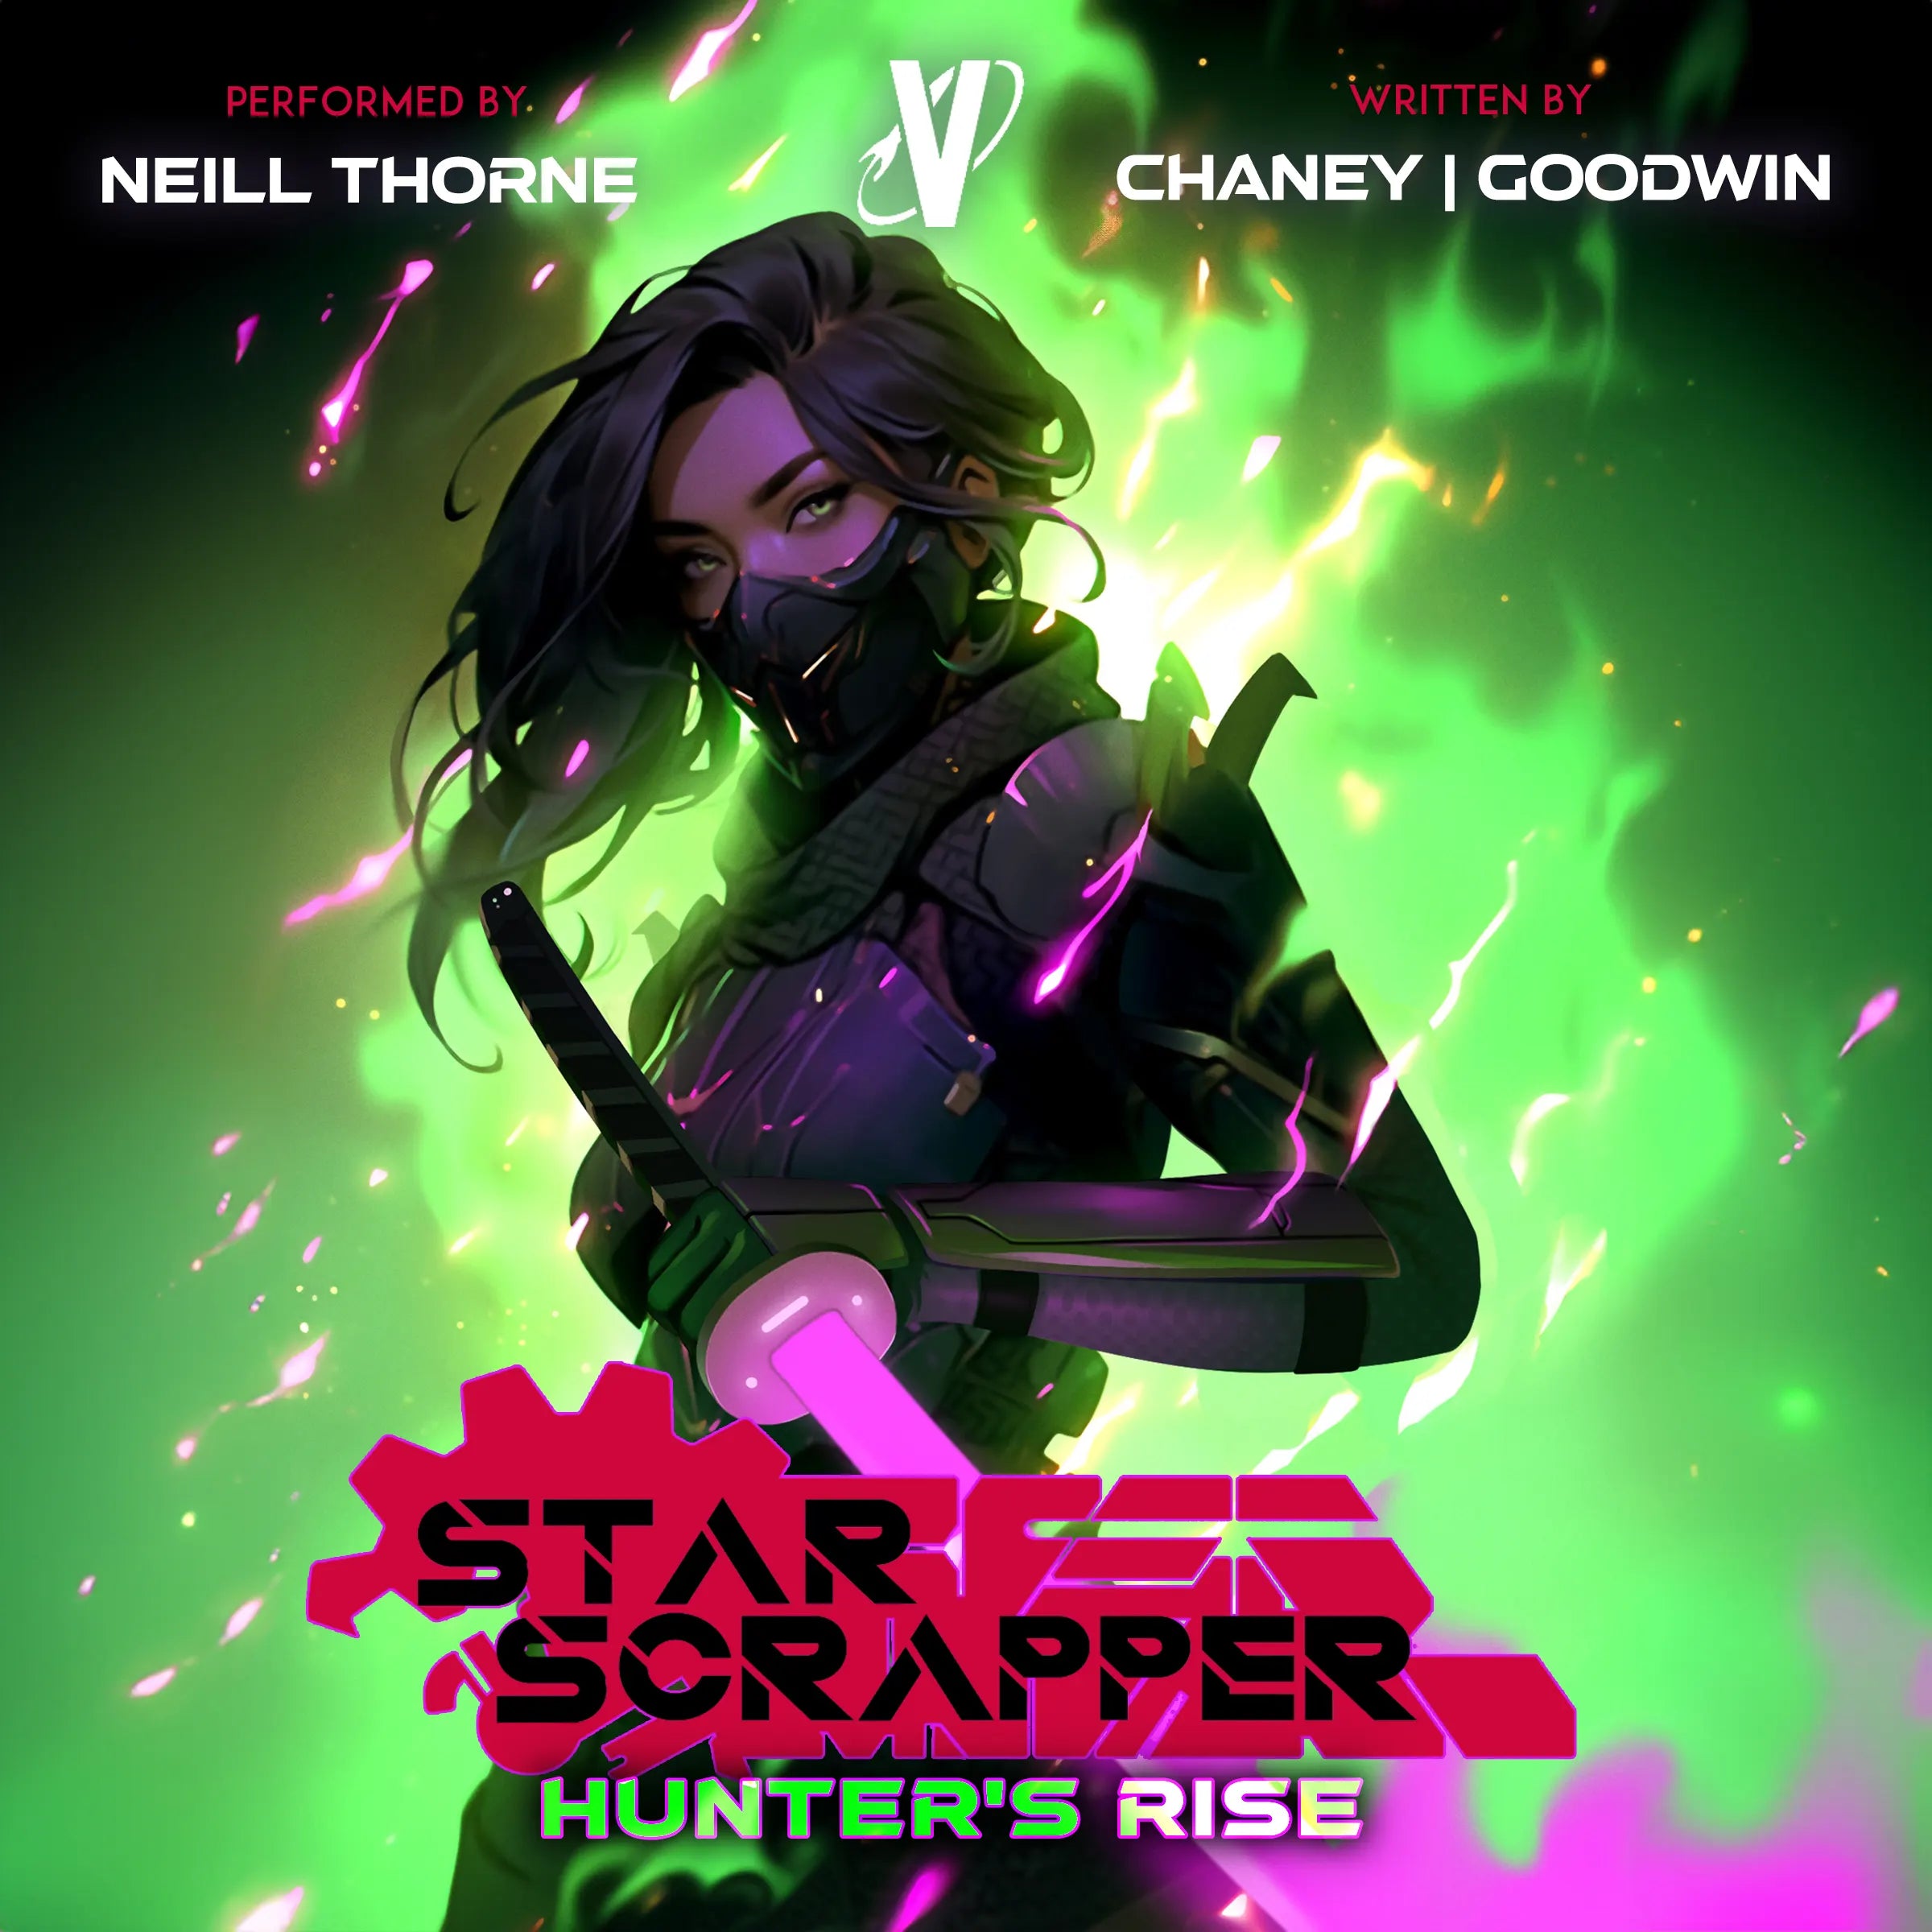 Star Scrapper 2 Audiobook: Hunter's Rise